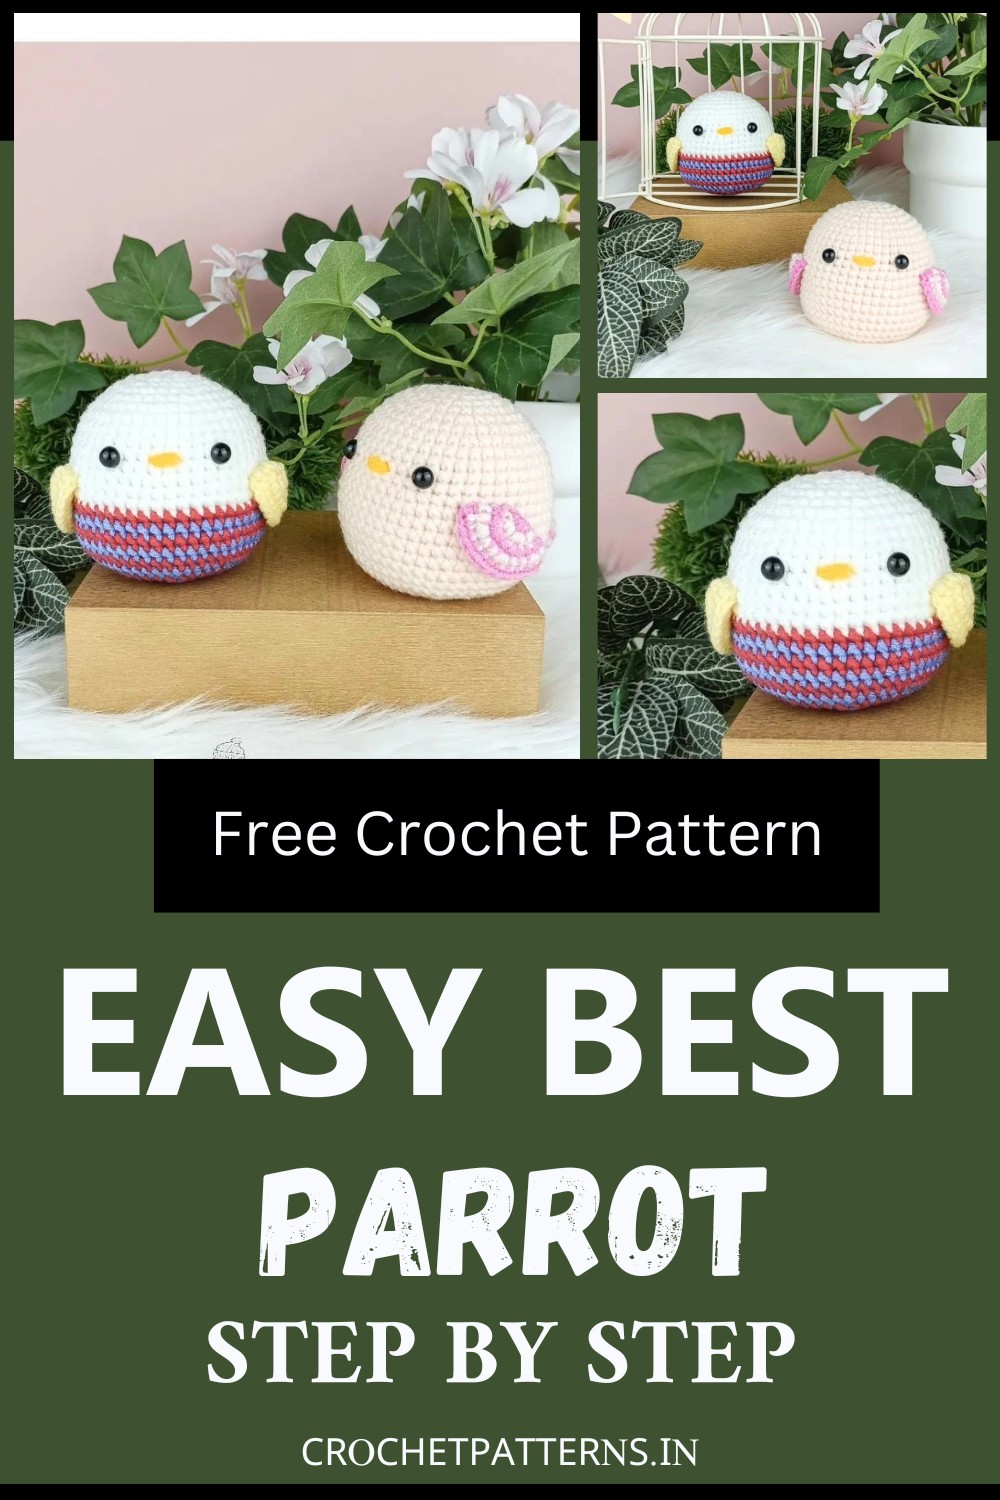 Free Crochet Parrot Pattern 1